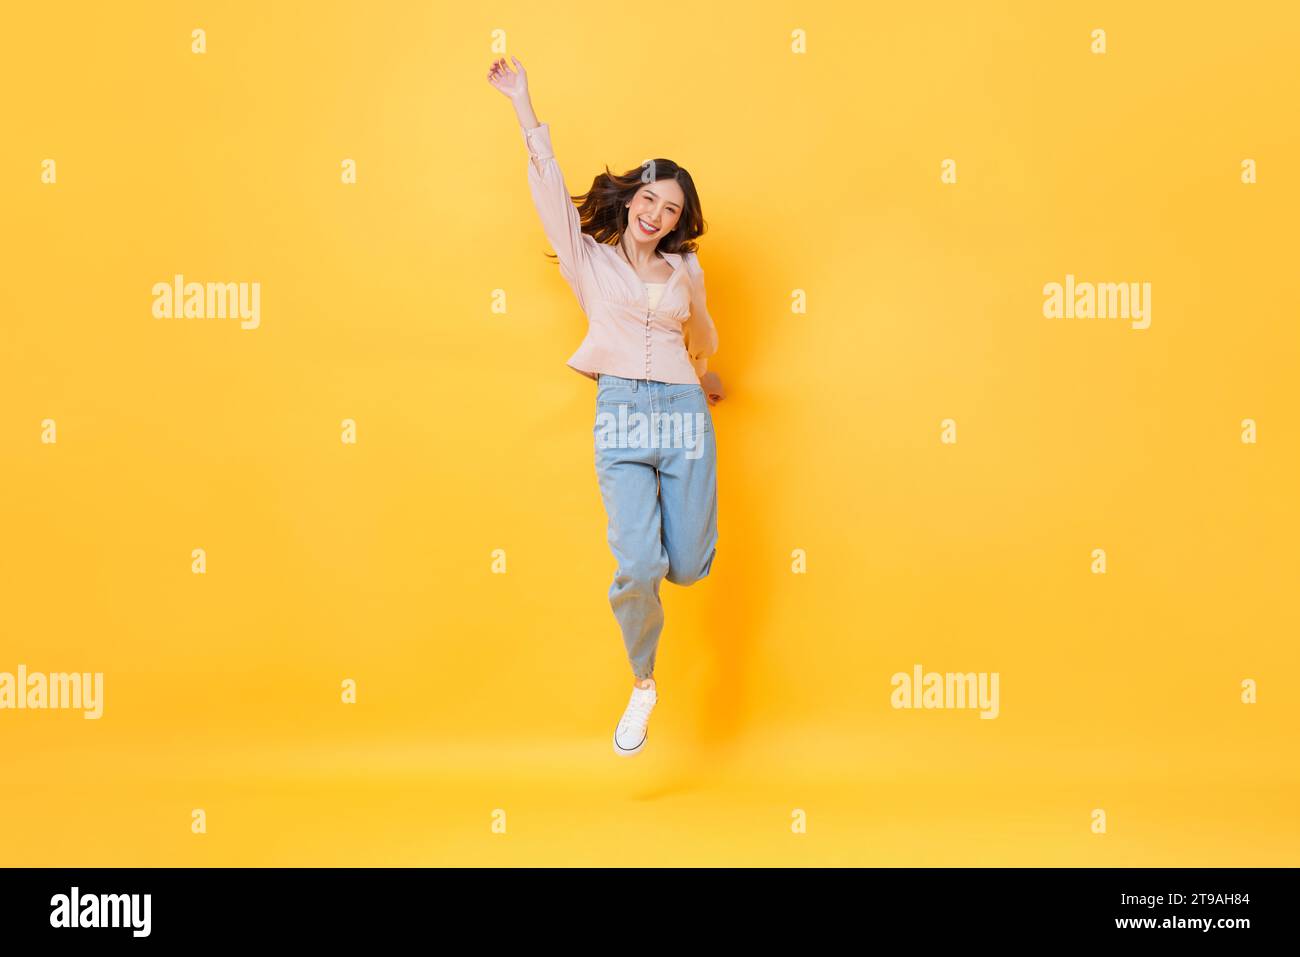 Fröhliche asiatische Frau in lässiger Kleidung lächelnd und springend mit Hand nach oben in bunter gelber Farbe isolierte Hintergrundstudio-Aufnahme Stockfoto